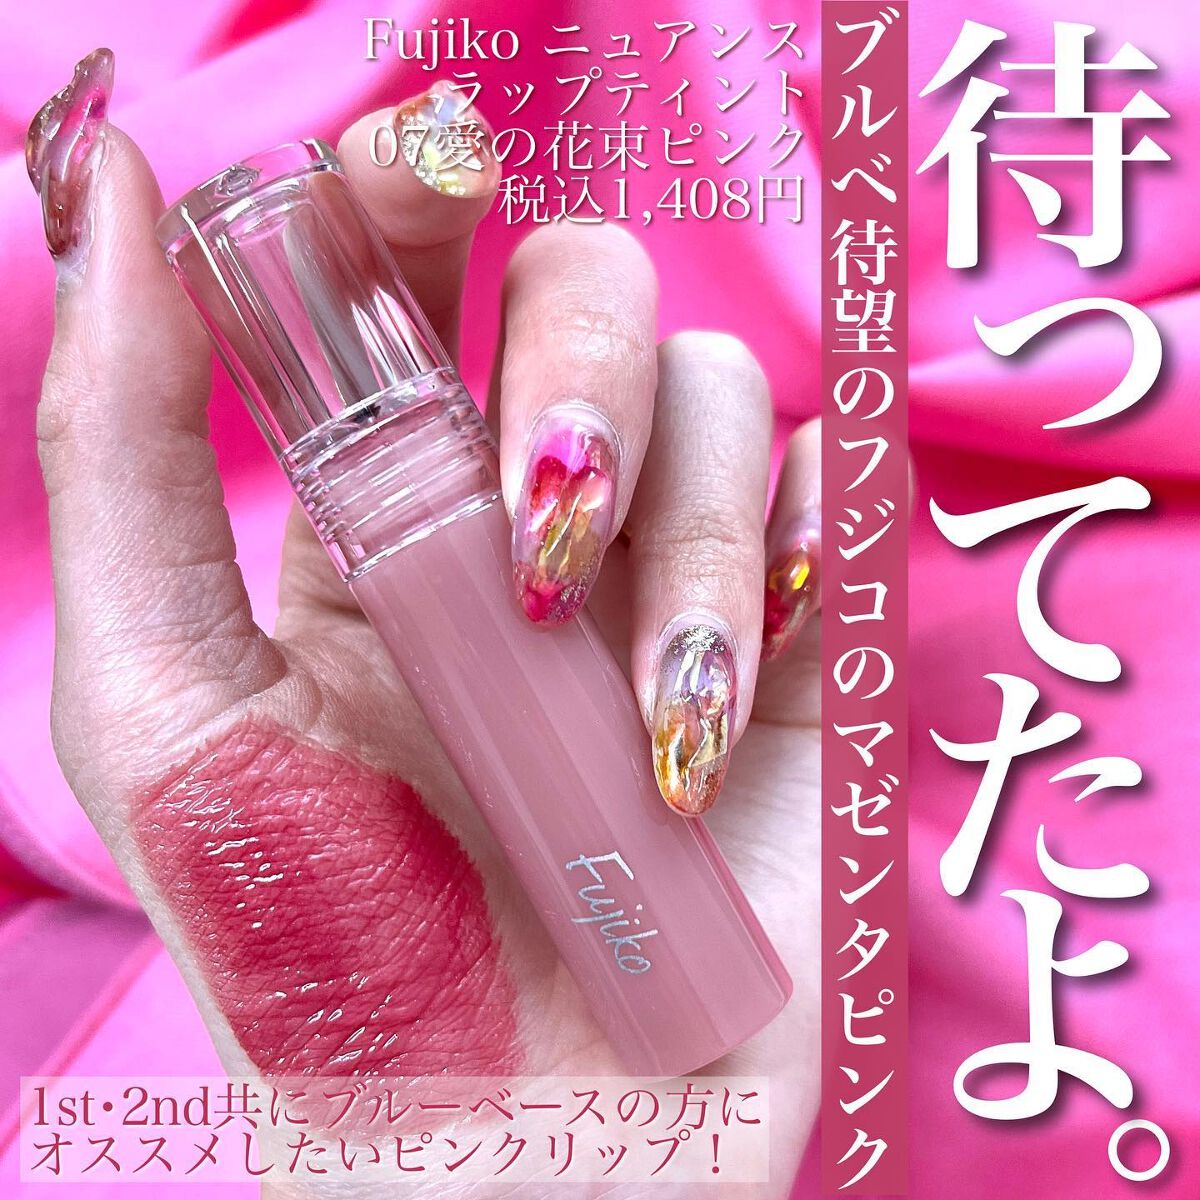 新品 ◆Fujiko (フジコ) ニュアンスラップティント 07 愛の花束ピンク (リップカラー)◆